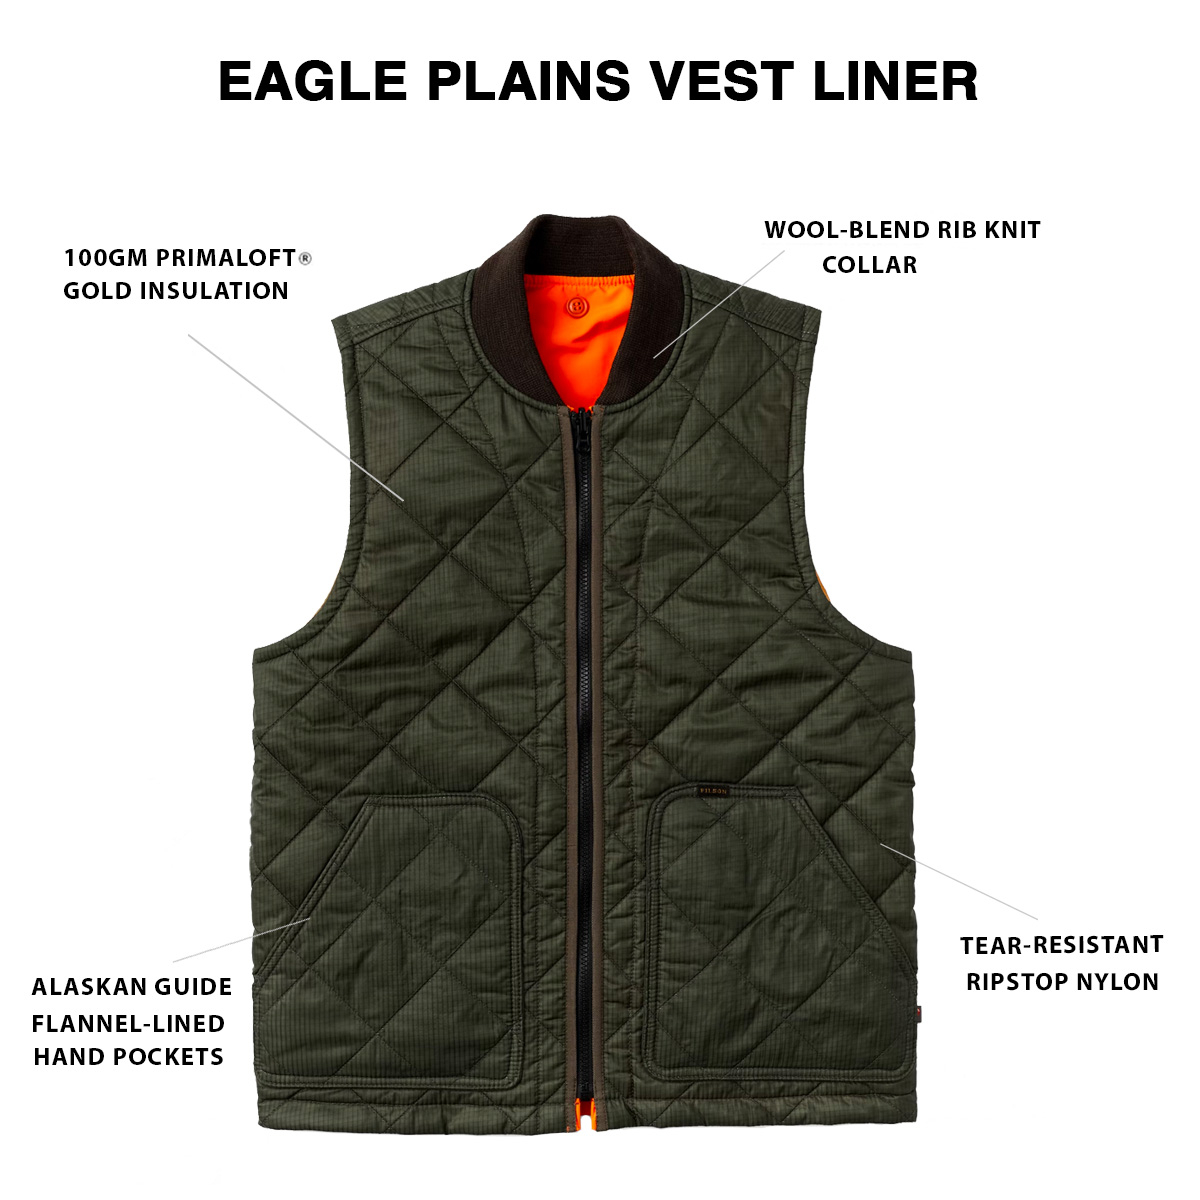 Filson Eagle Plains Vest Liner Surplus Green Blaze, mit Cordura® Ripstop nylon und 100gm PrimaLoft® Gold insulation